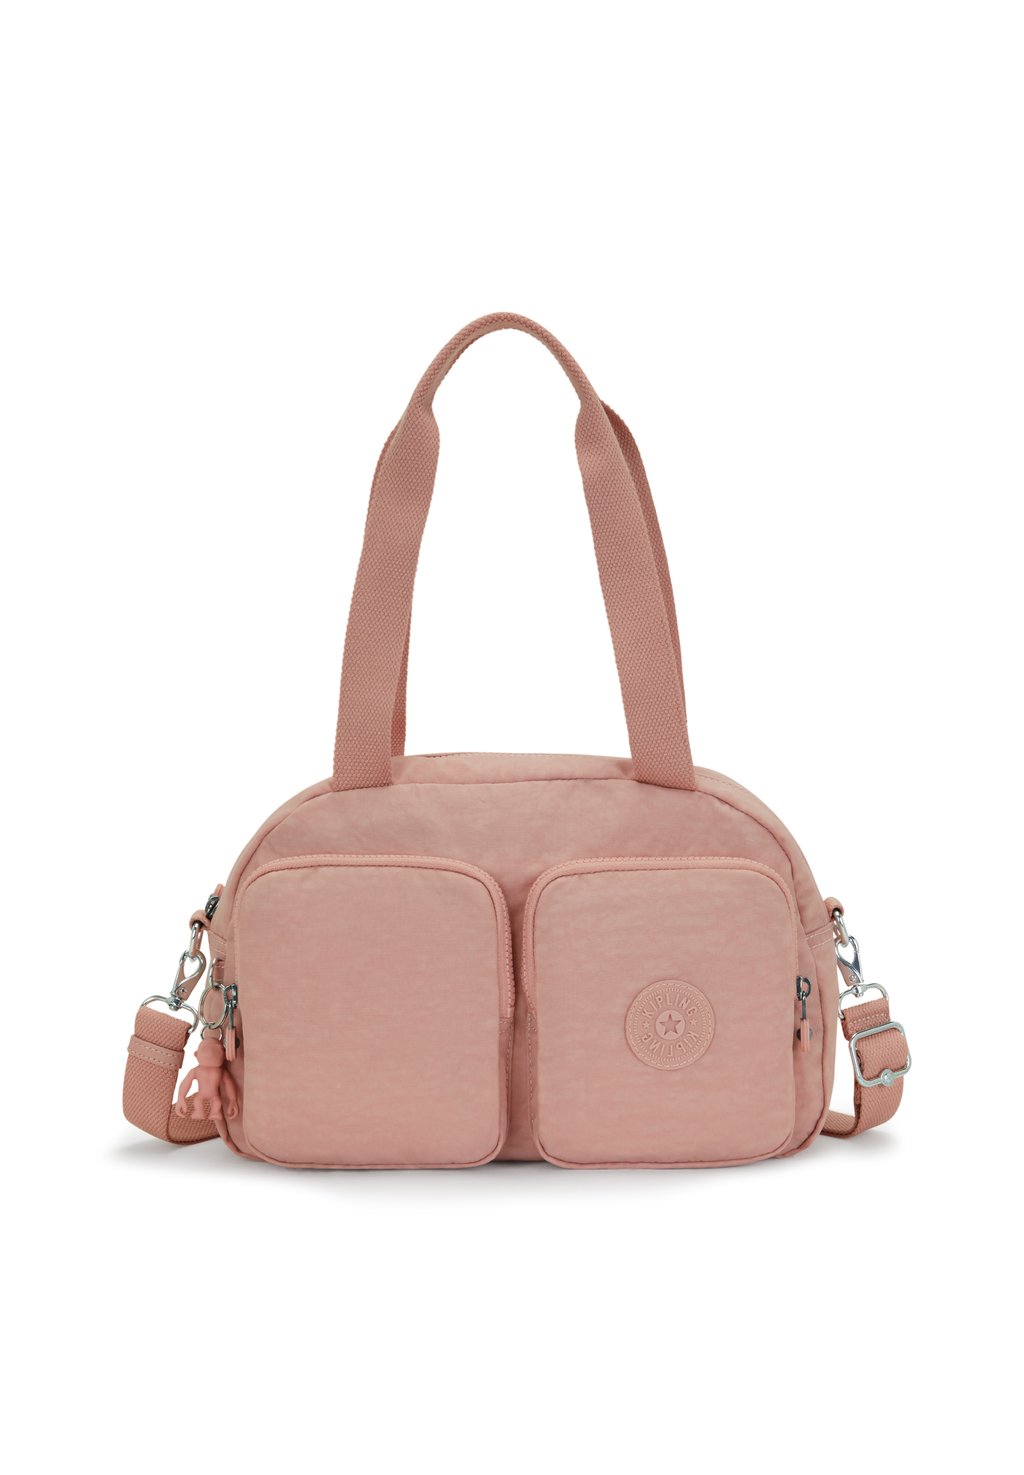 Сумка Kipling Cool Defea B, розовый сумка ki601748i cool defea medium shoulder bag 48i metallic glow